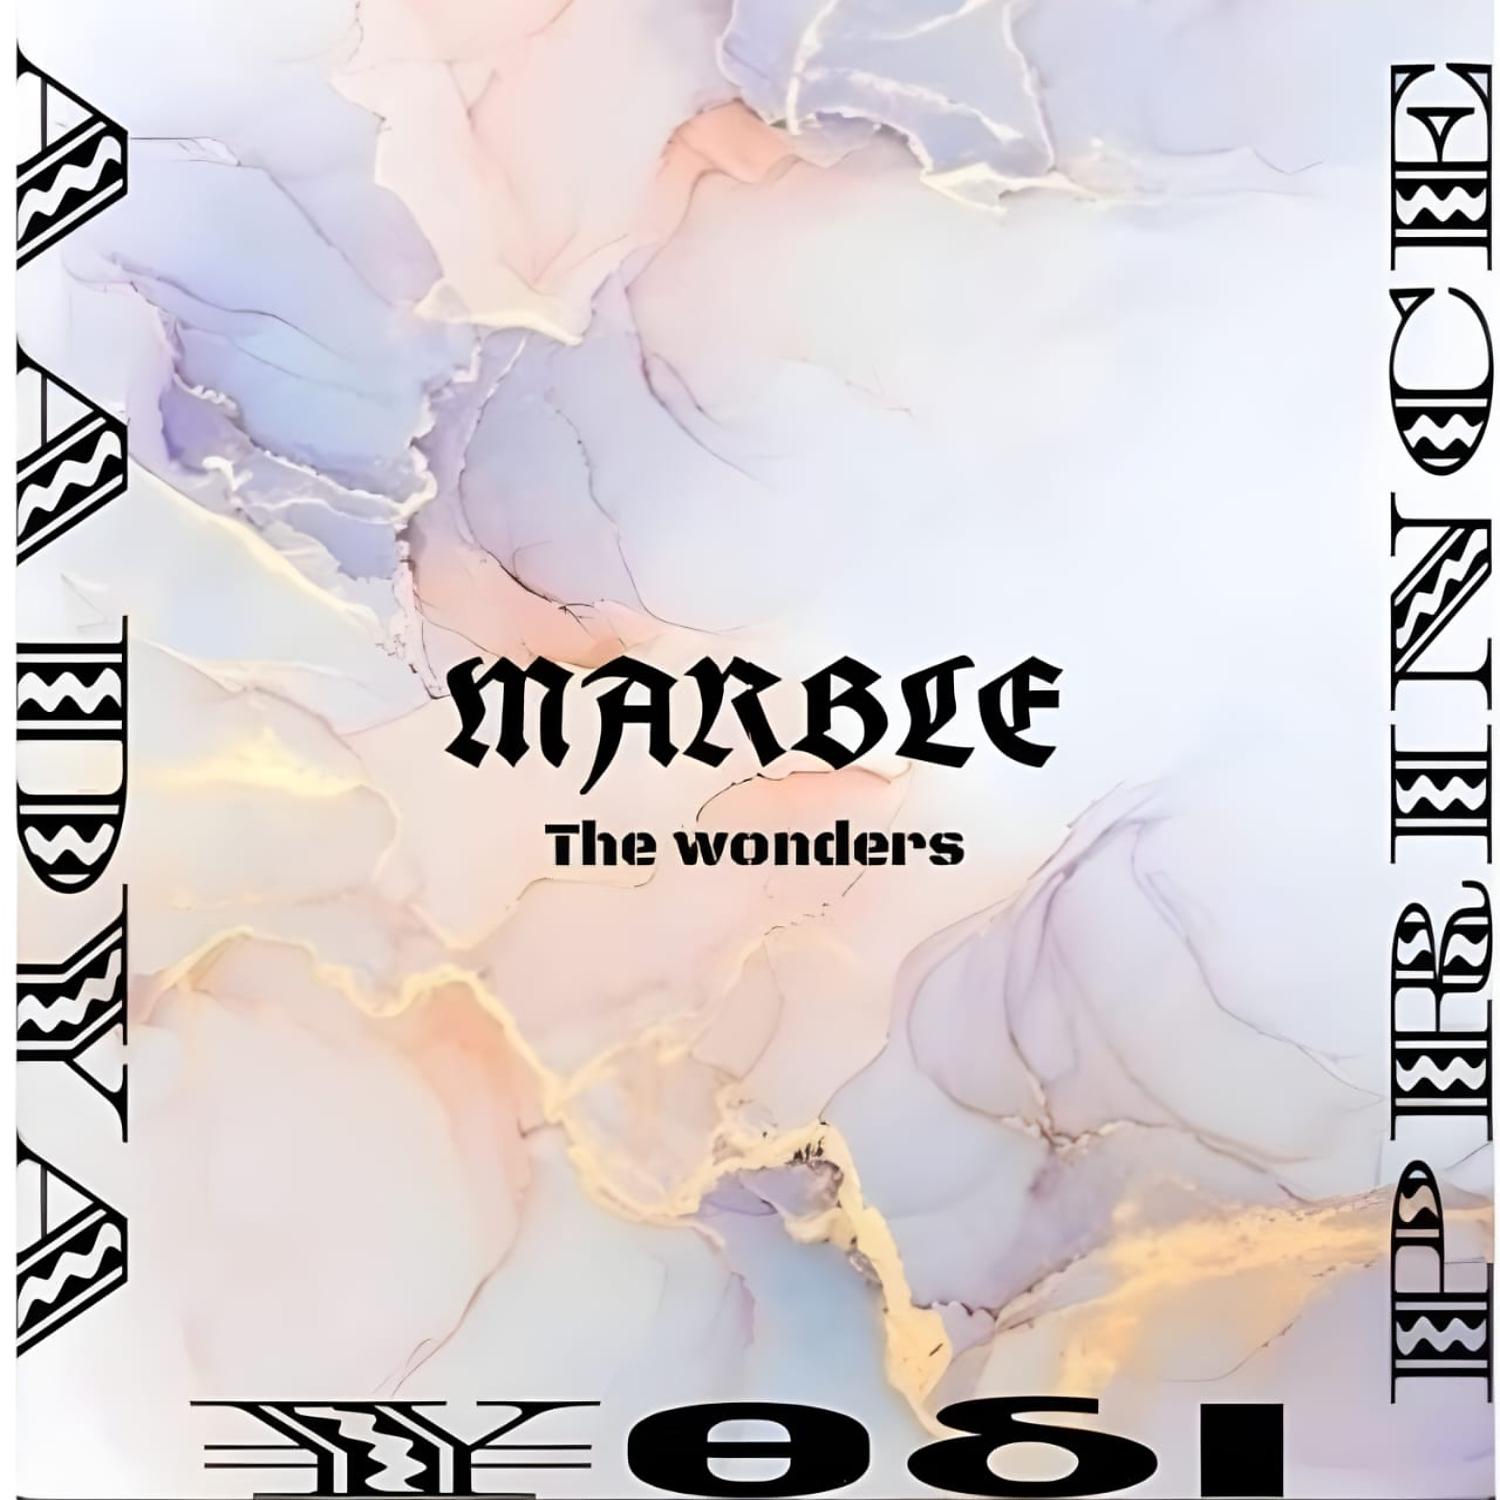 Постер альбома Marble